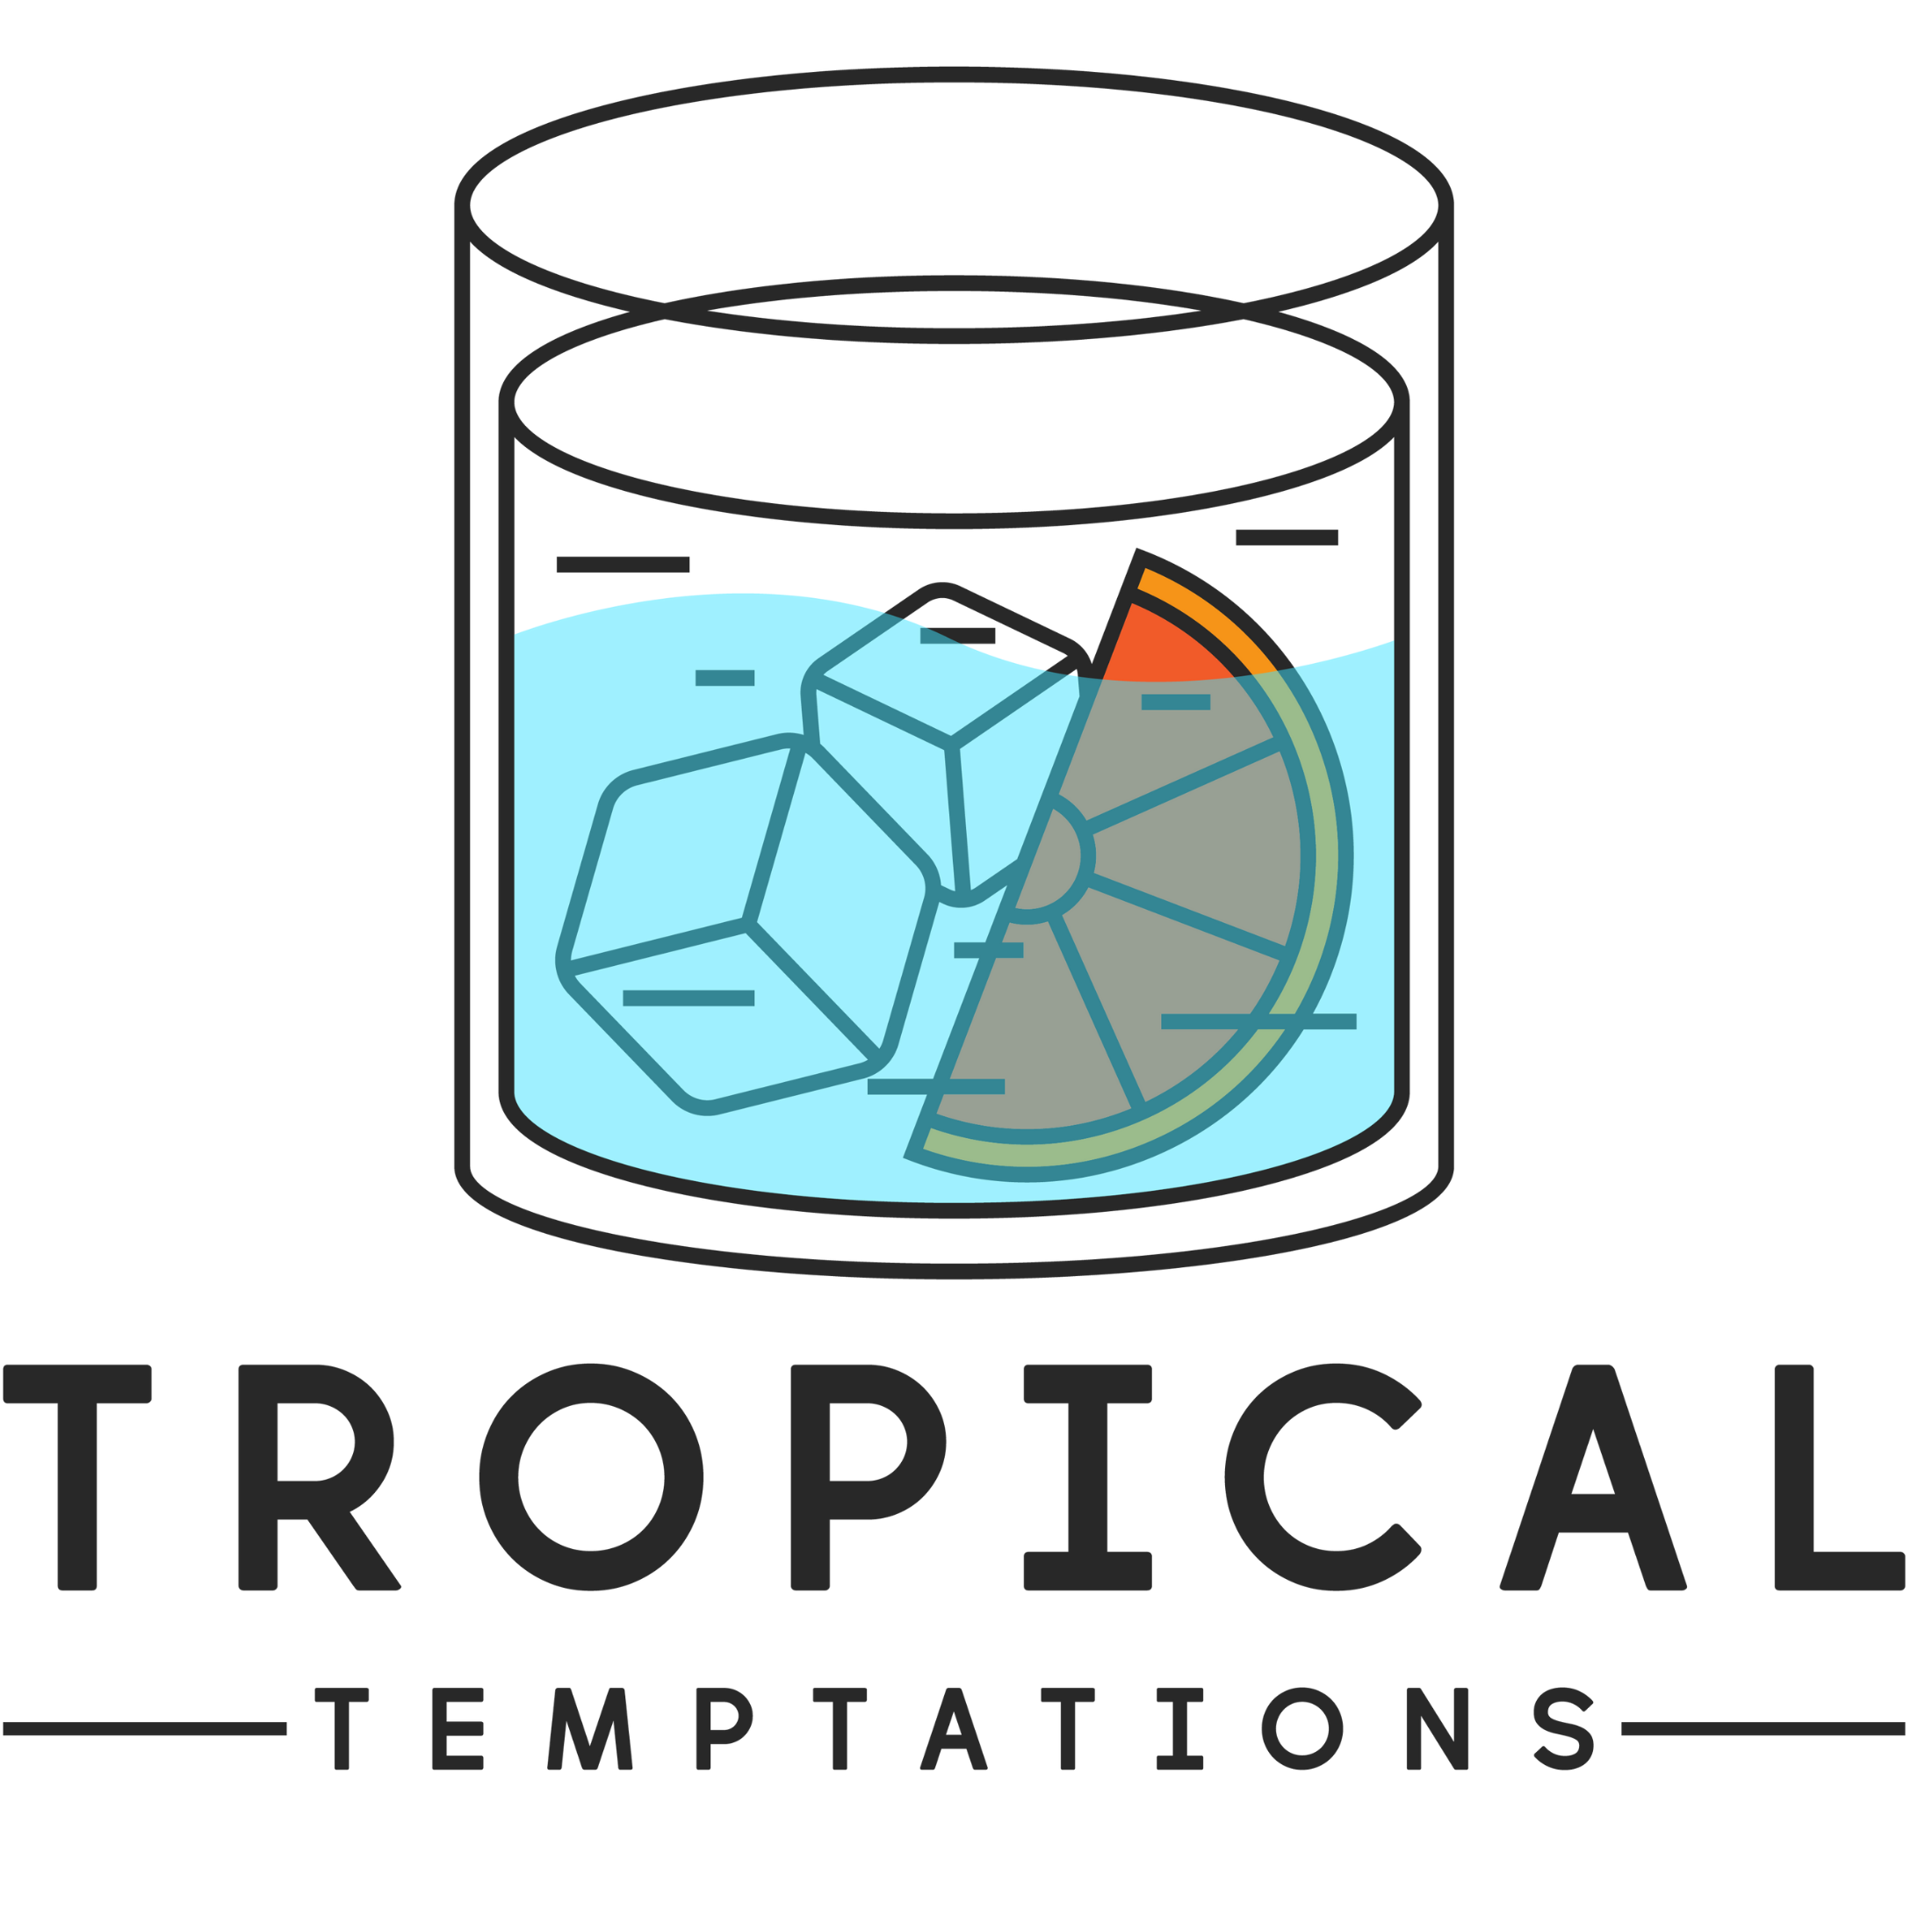 Tropical Temptation